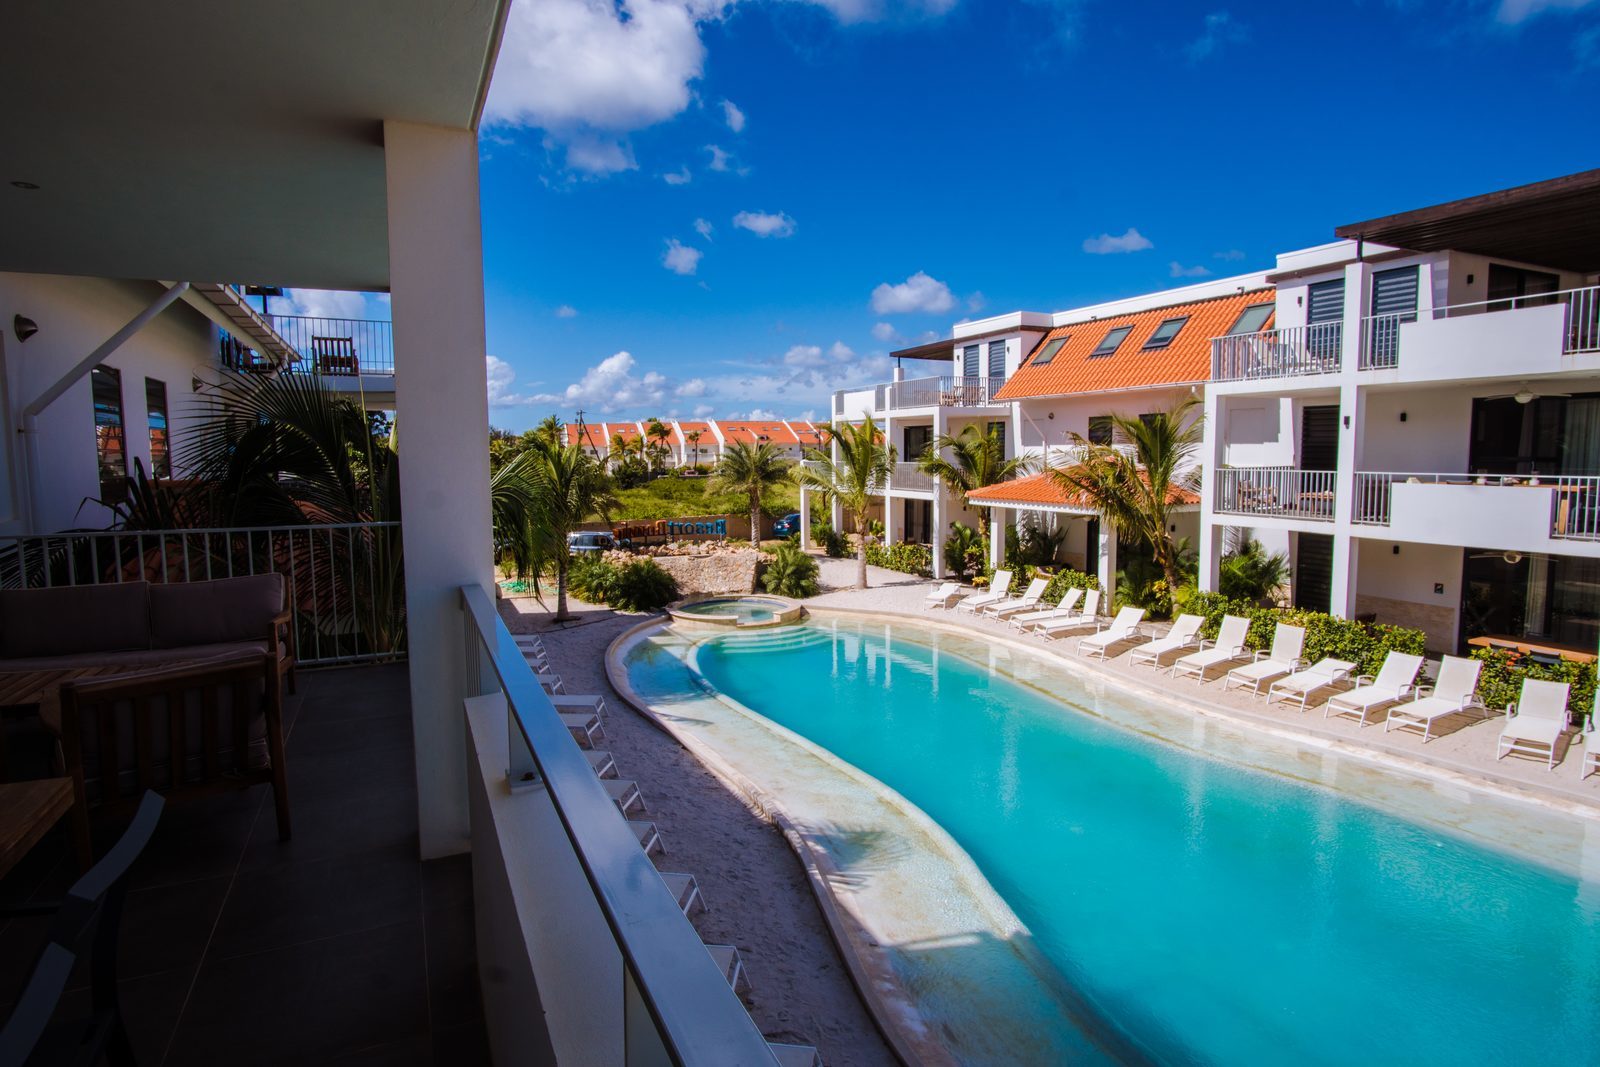 Tous les appartements du Resort Bonaire disposent d'une terrasse qui donne sur la piscine.